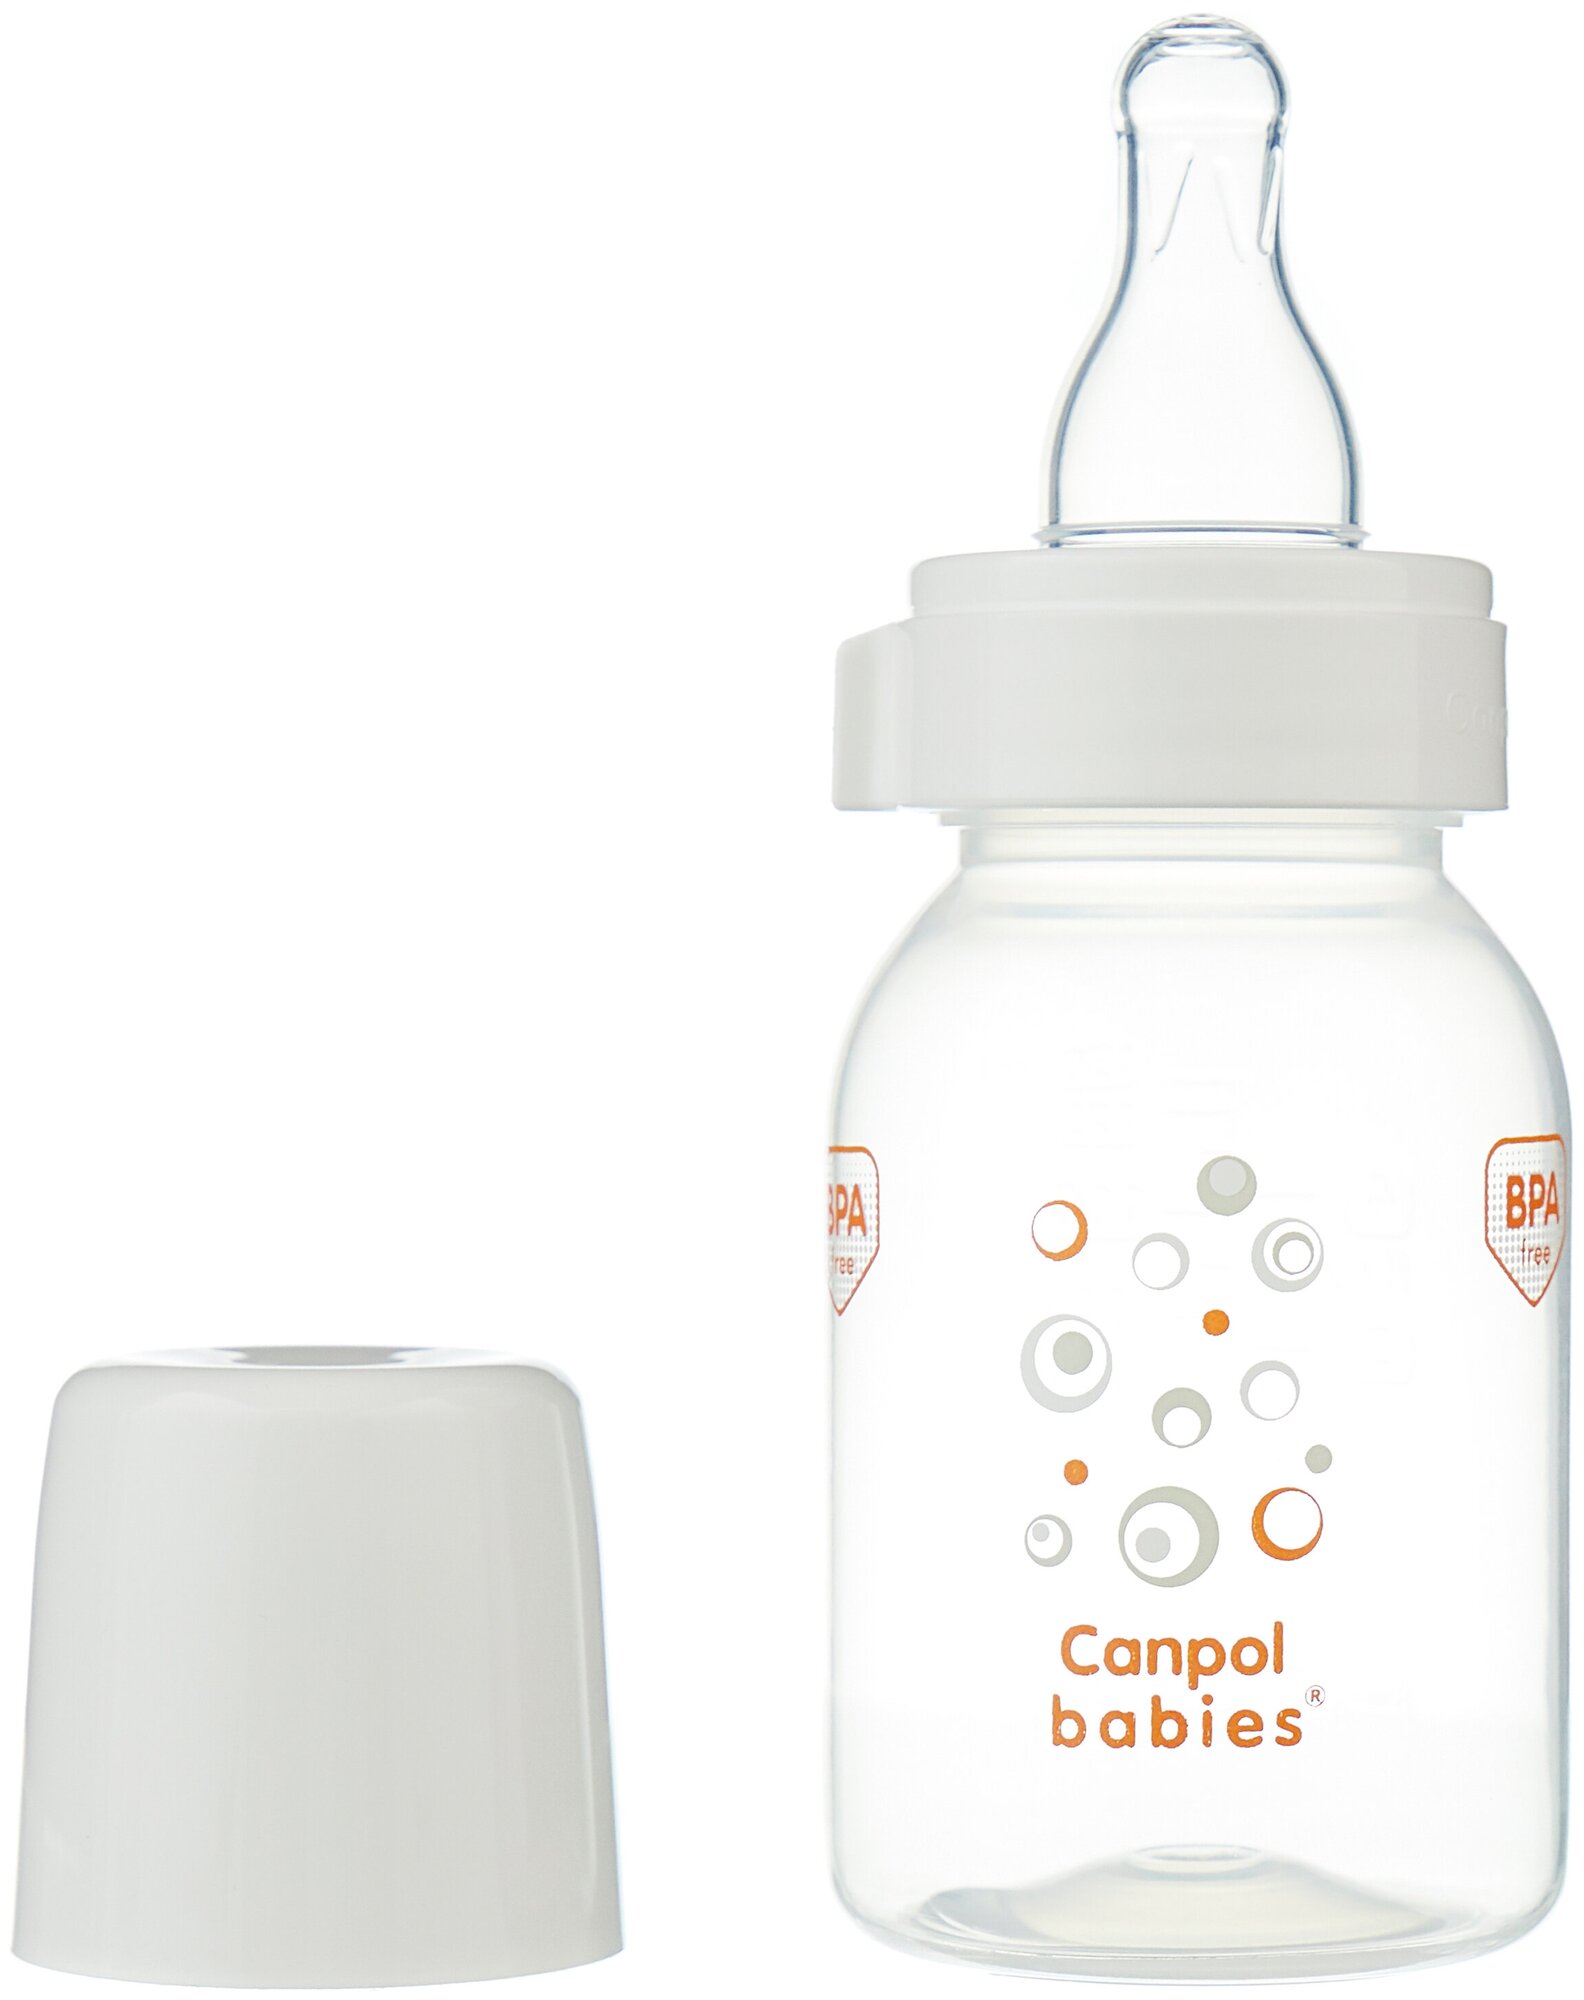 Молокоотсос Canpol babies (Канпол бейбис) Premium ручной Canpol Sp.z o.o. - фото №14